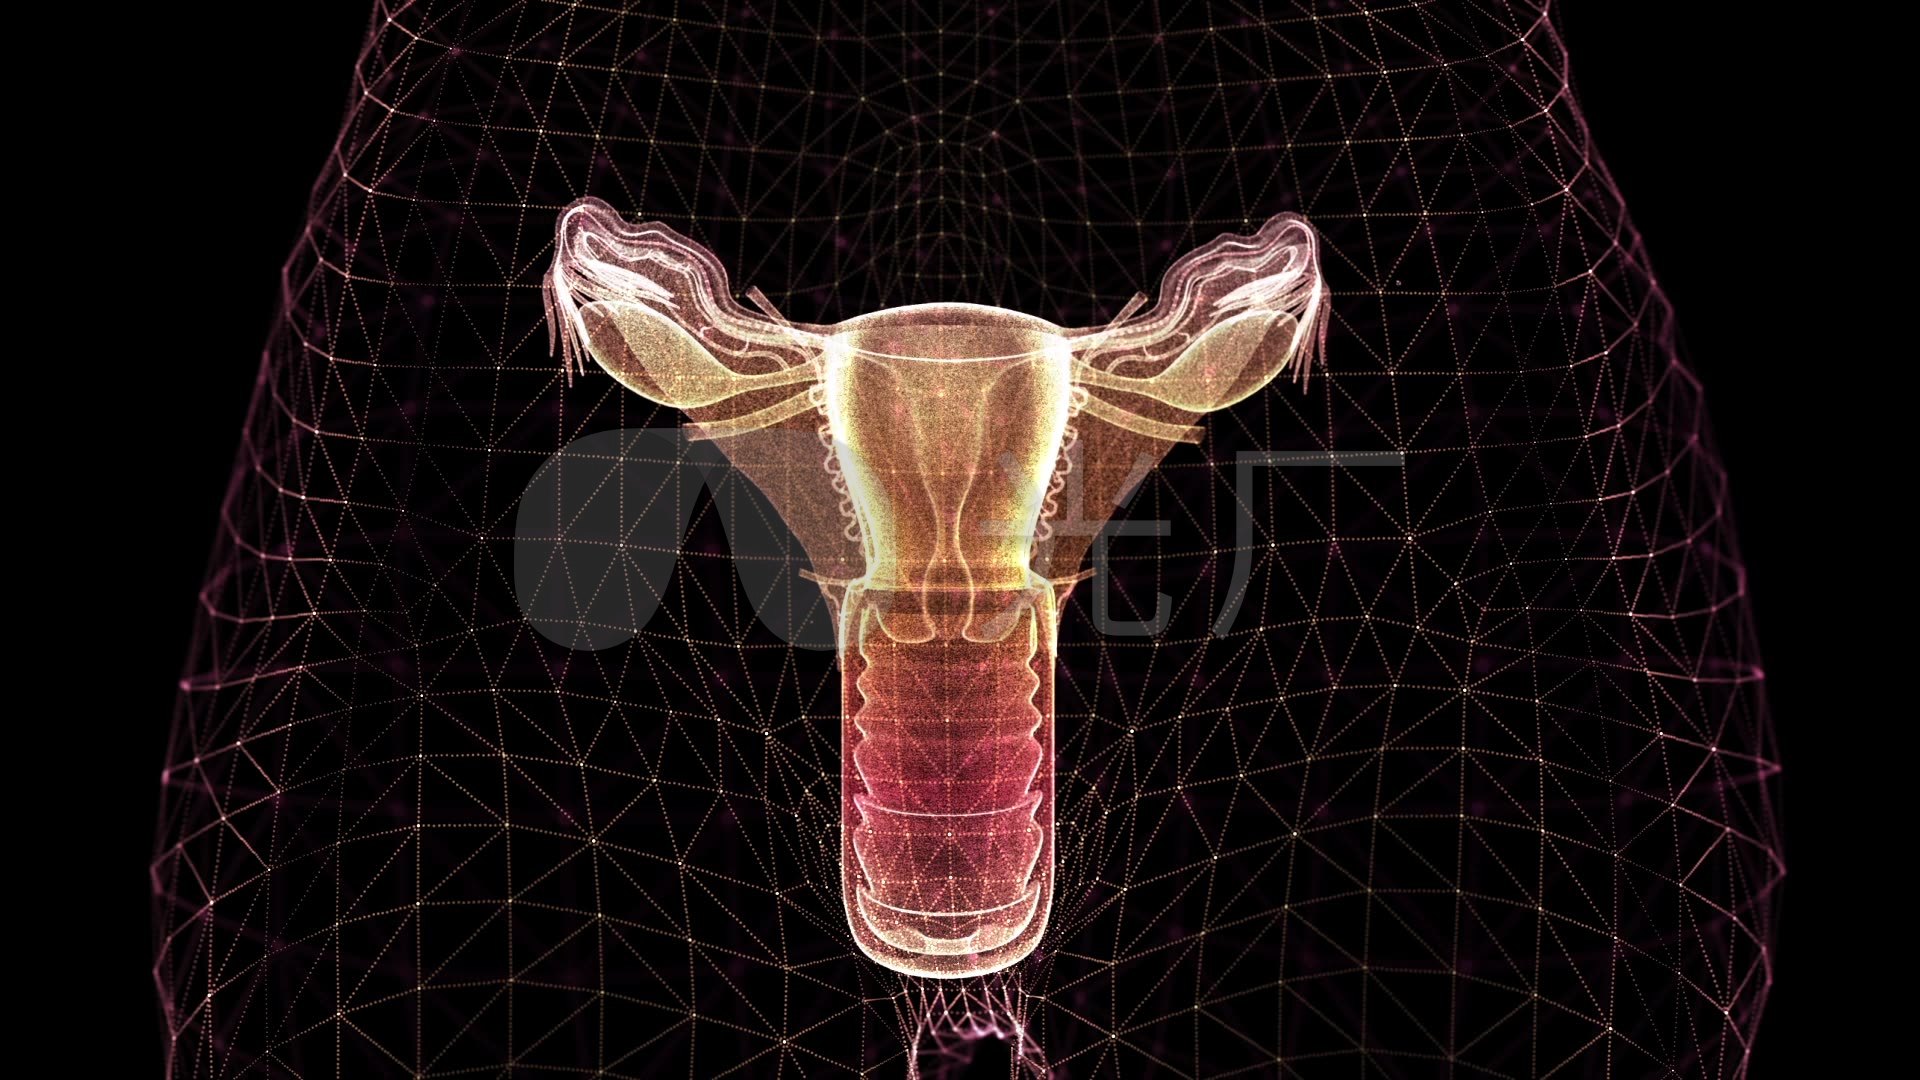 粉红色女性生殖器健康宣传海报素材下载-欧莱凯设计网